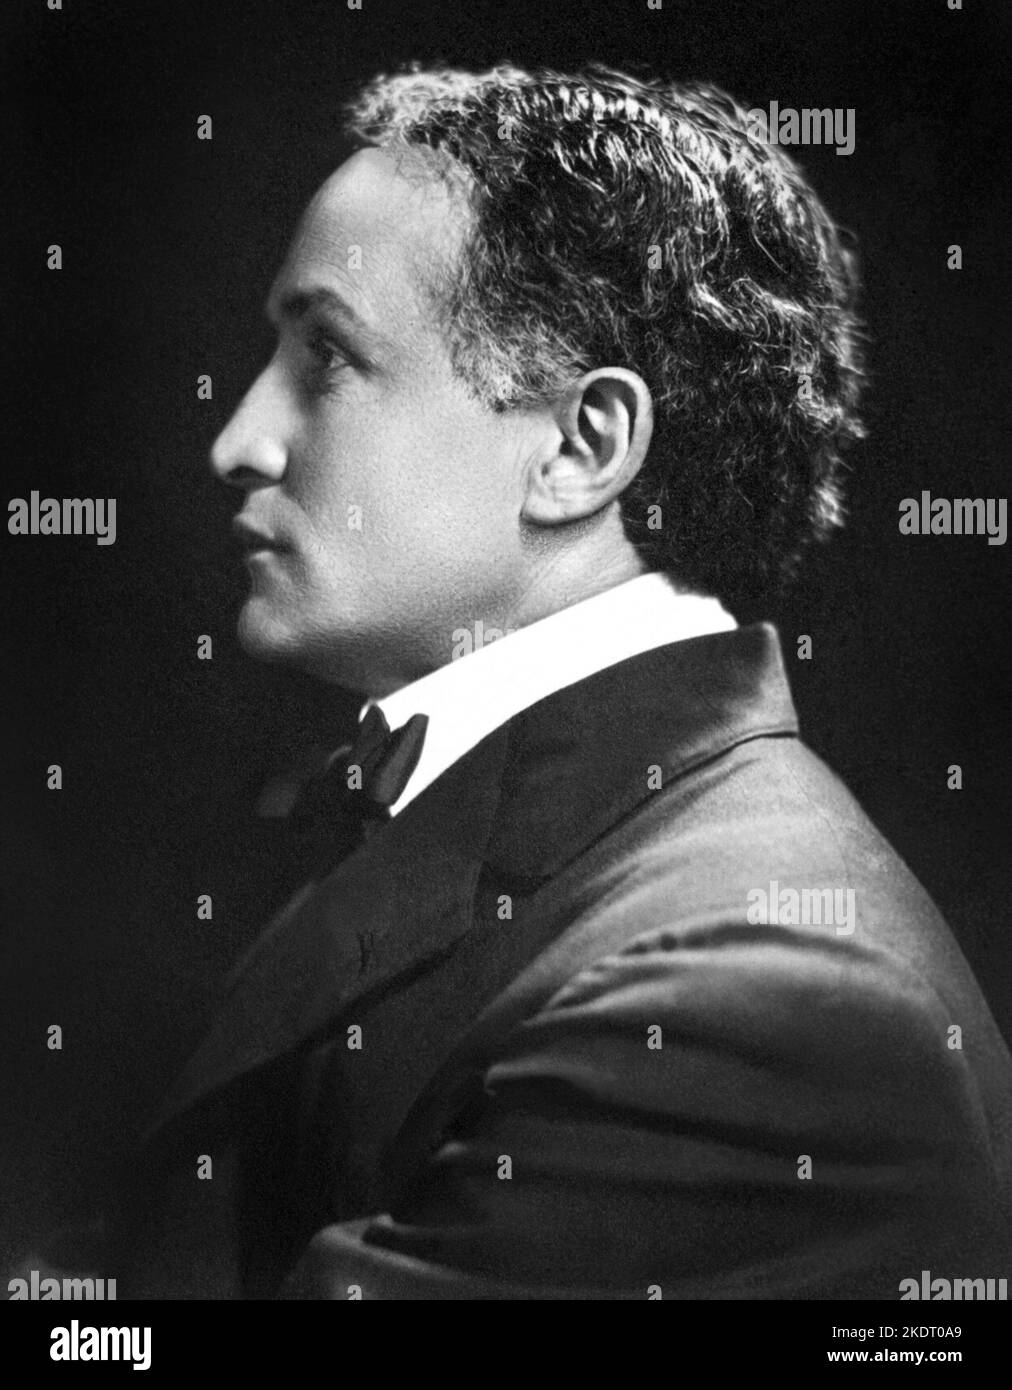 Harry Houdini (1874-1926), ilusionista húngaro-americano y artista de escape, en un retrato de perfil c1920. Foto de stock